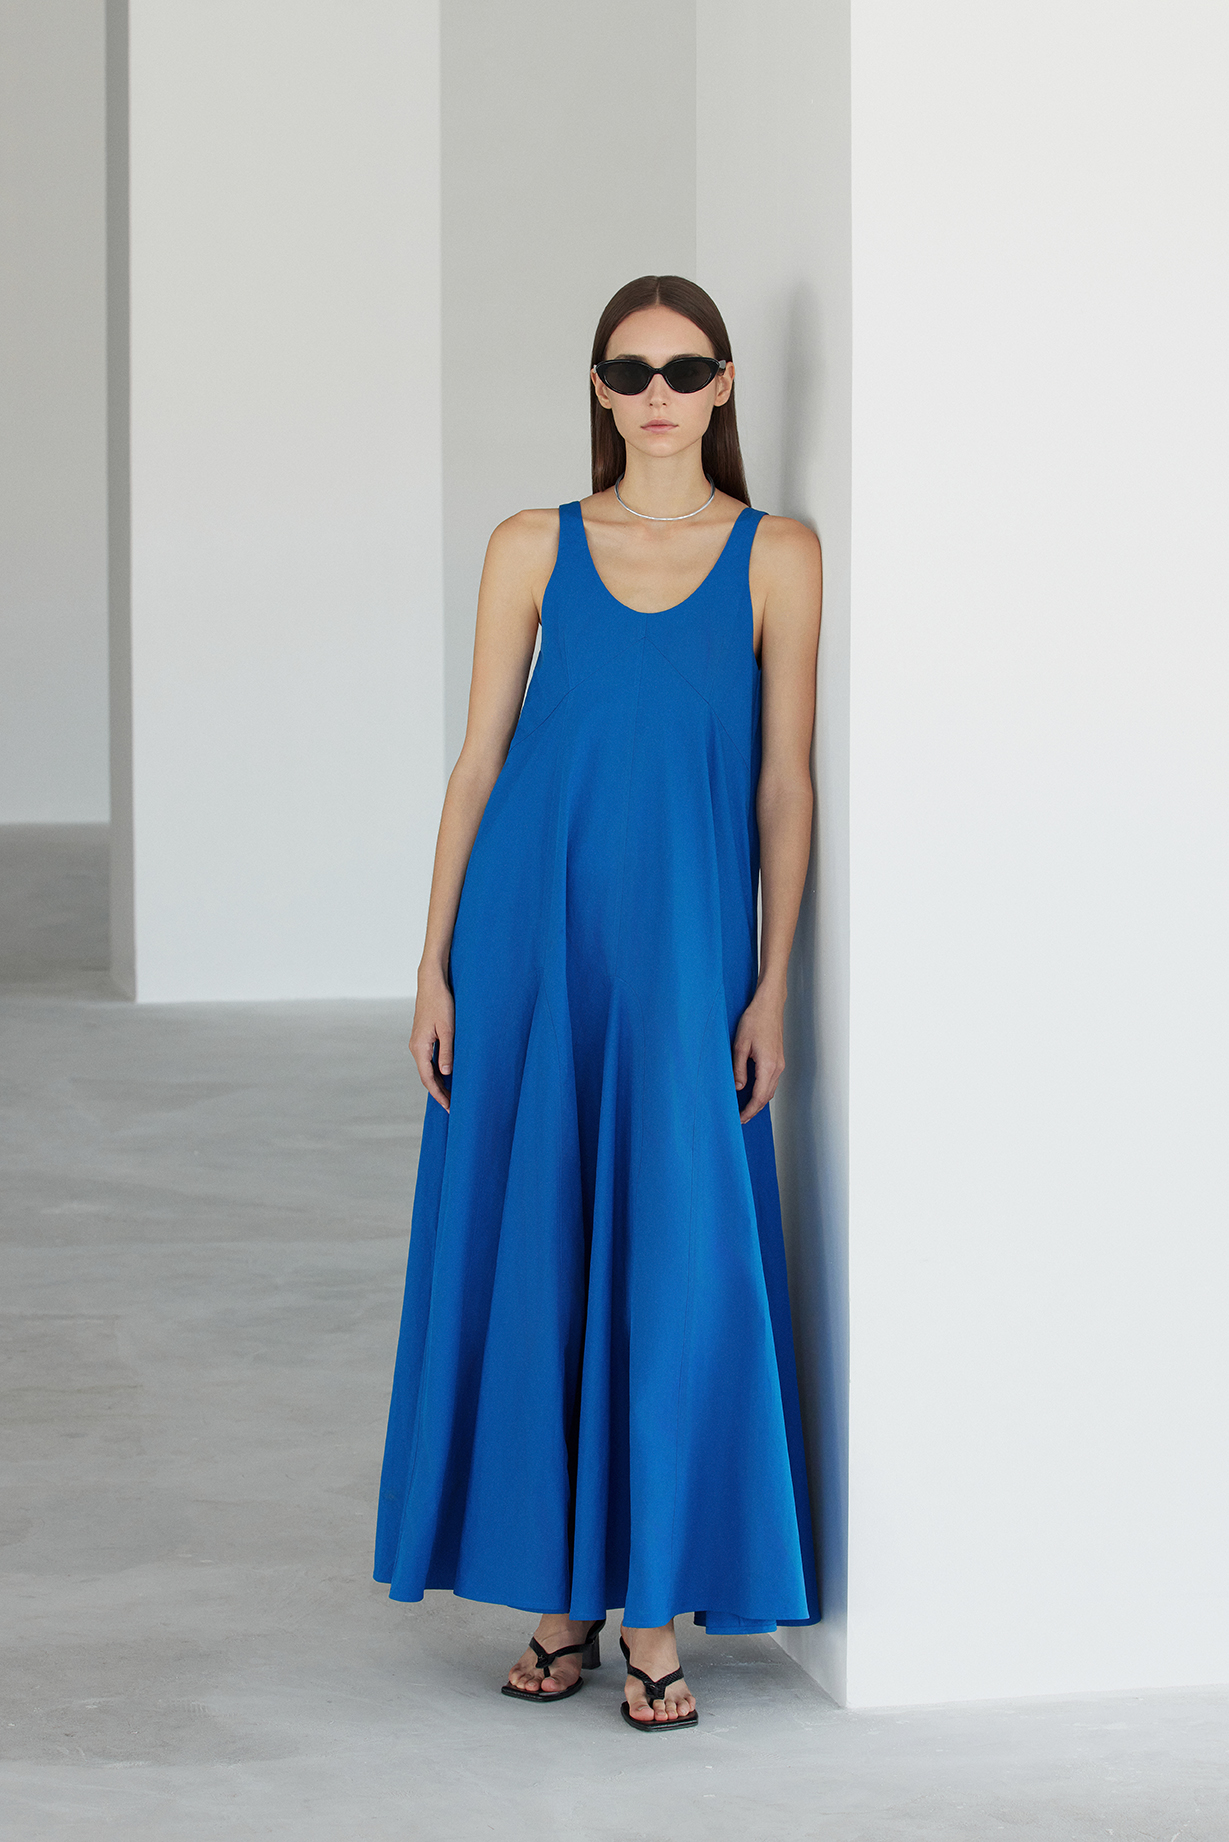 Sloane Dress in Blue